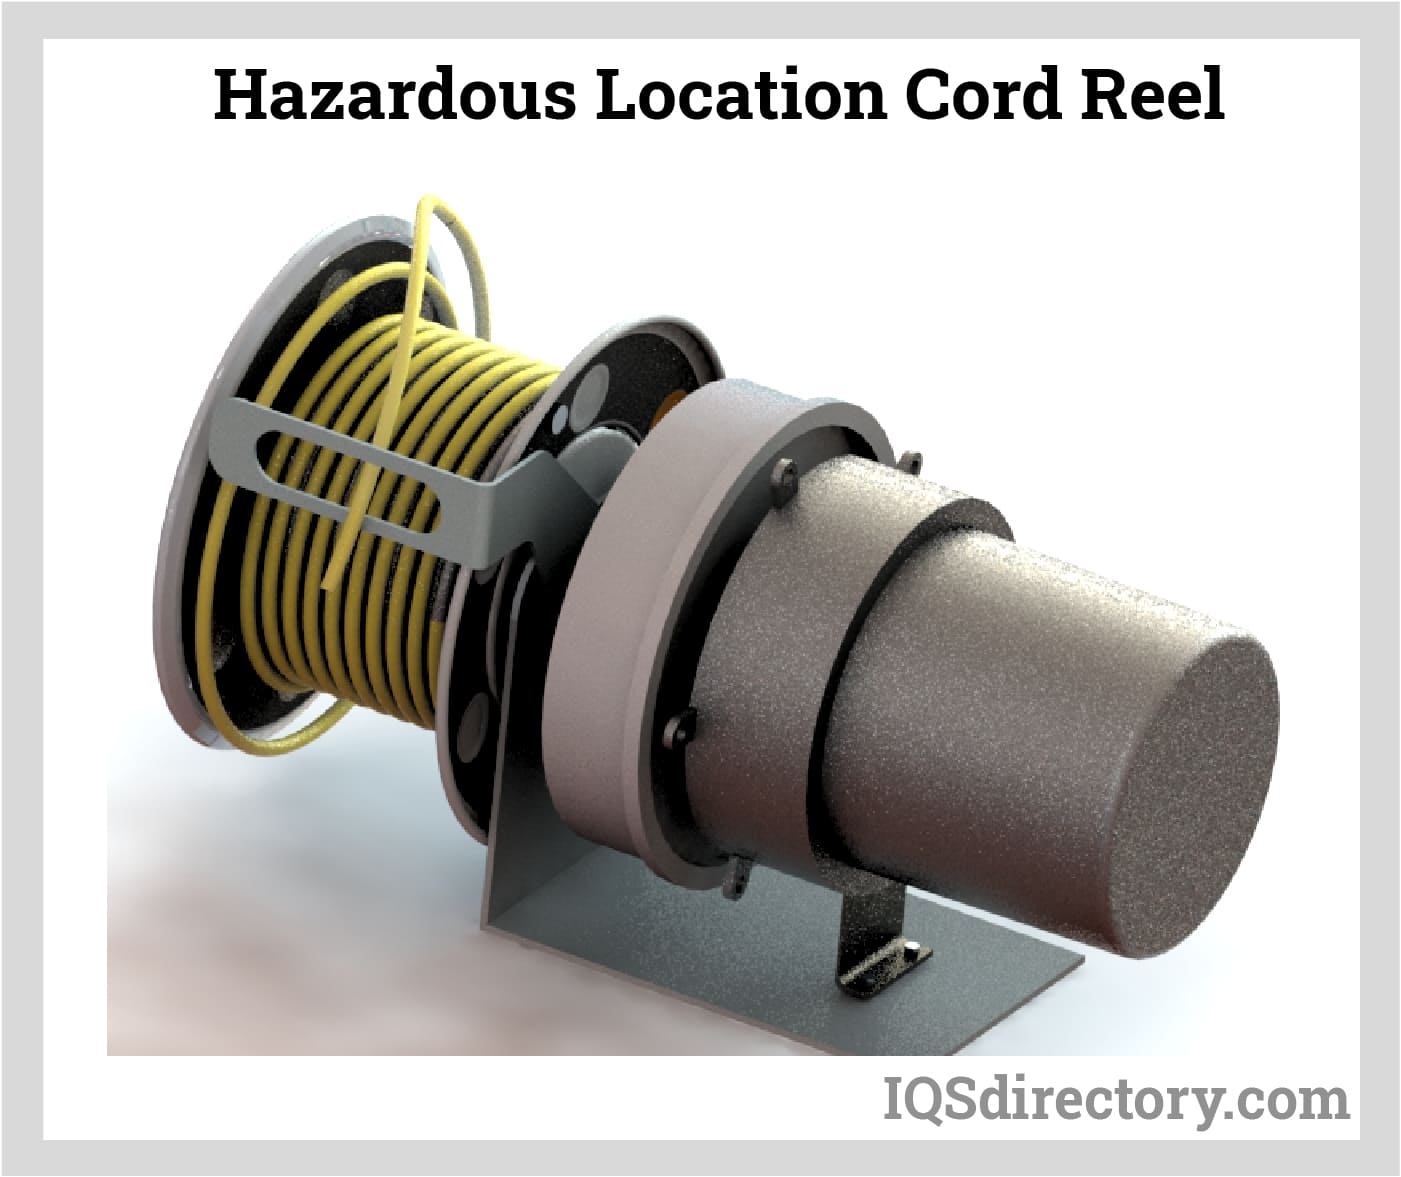 Hazardous Location Cord Reel